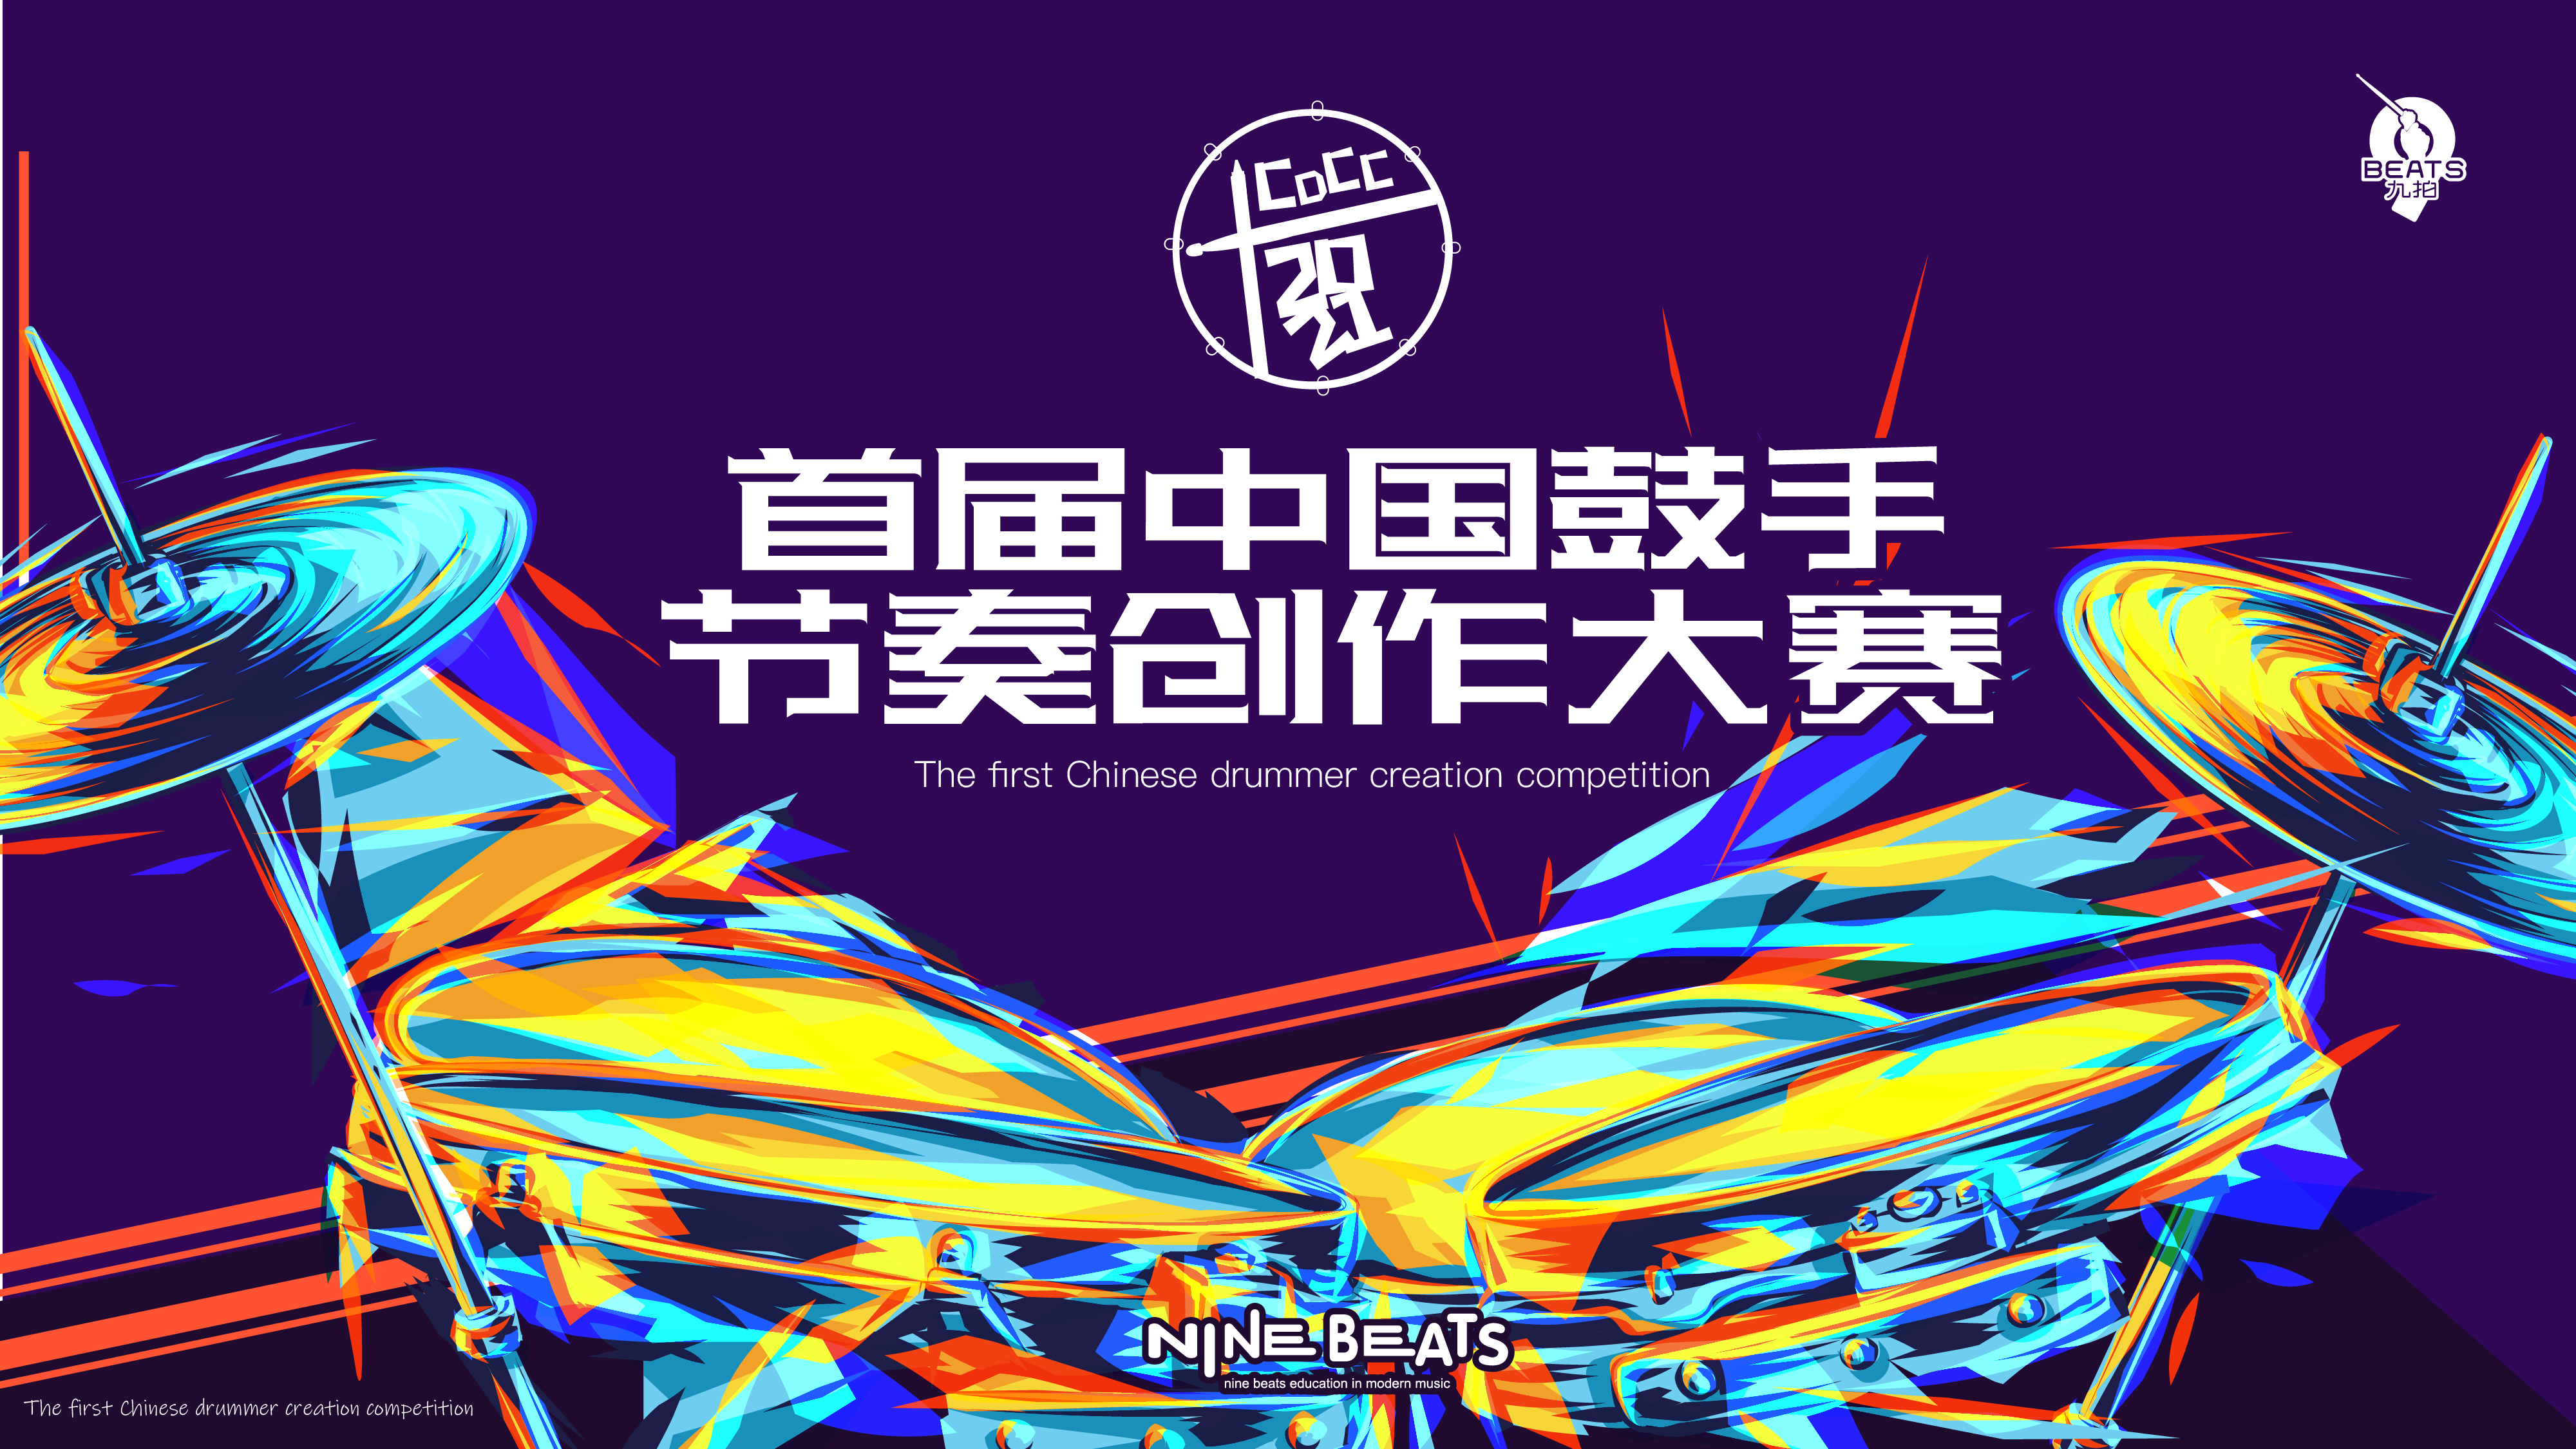 叮！您有一份邀請函待查收！2021 首屆中國鼓手節奏創作大賽來了~